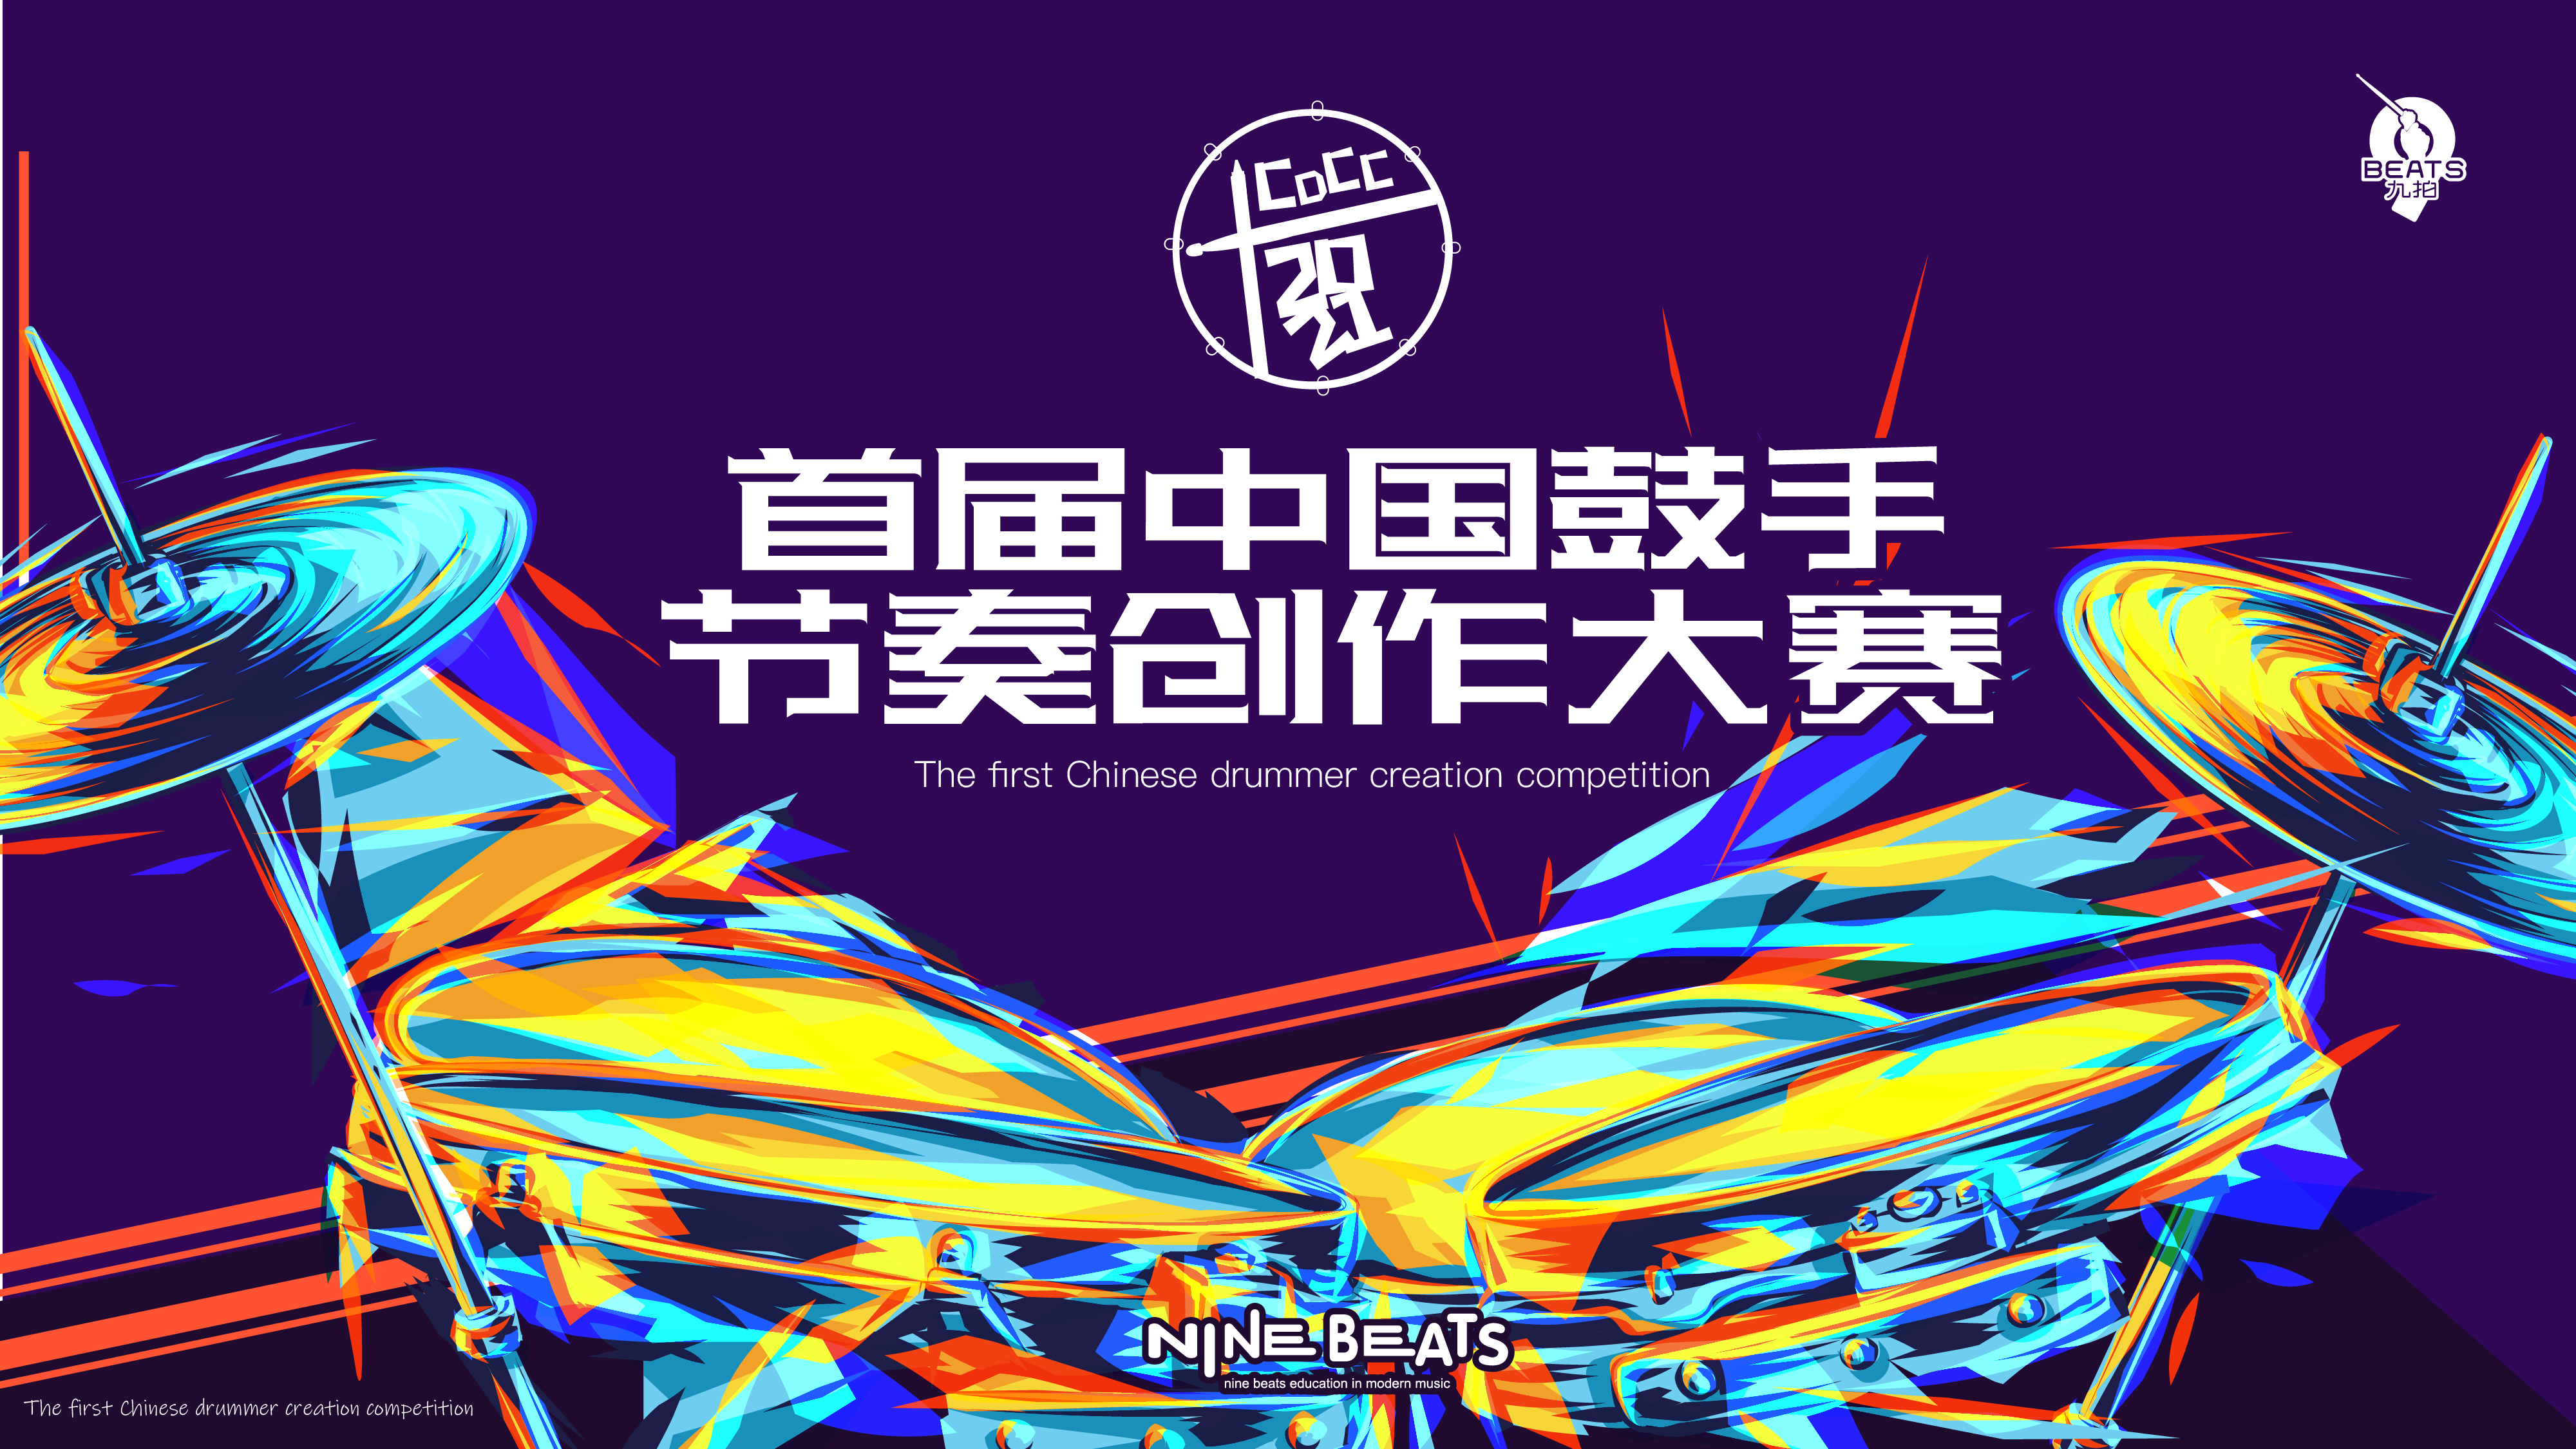 叮！您有一份邀請函待查收！2021 首屆中國鼓手節奏創作大賽來了~